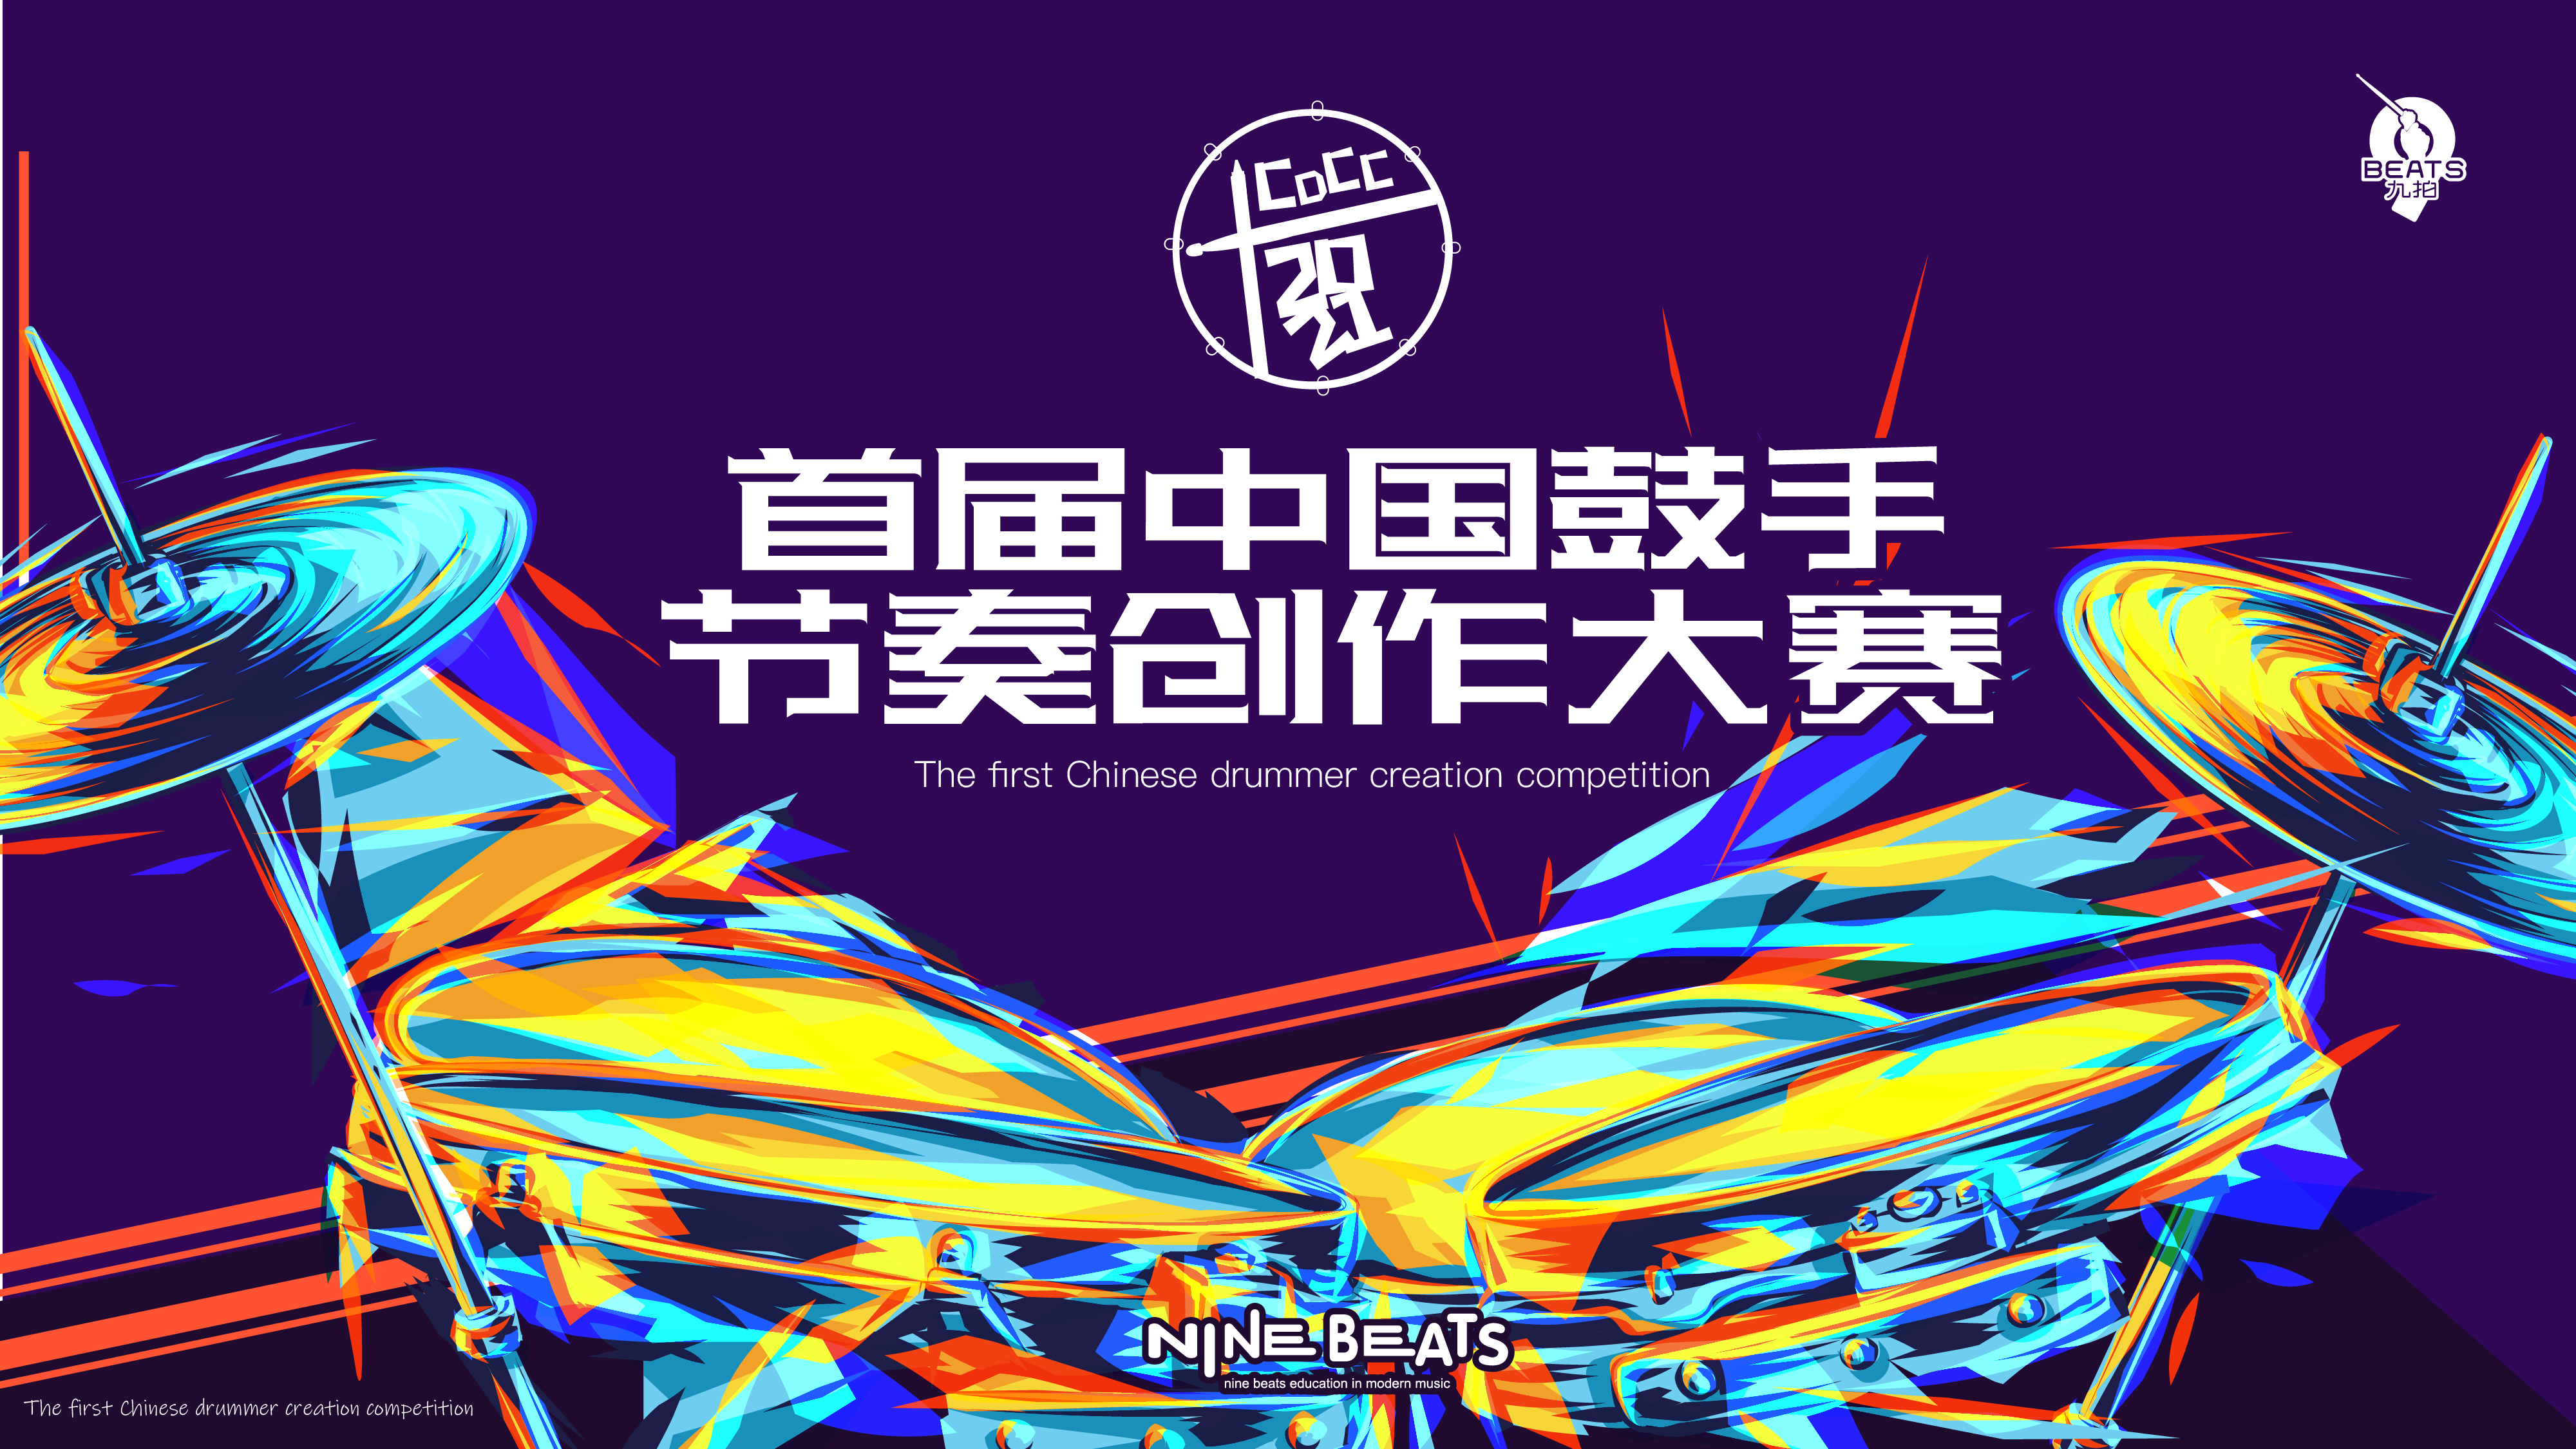 叮！您有一份邀請函待查收！2021 首屆中國鼓手節奏創作大賽來了~